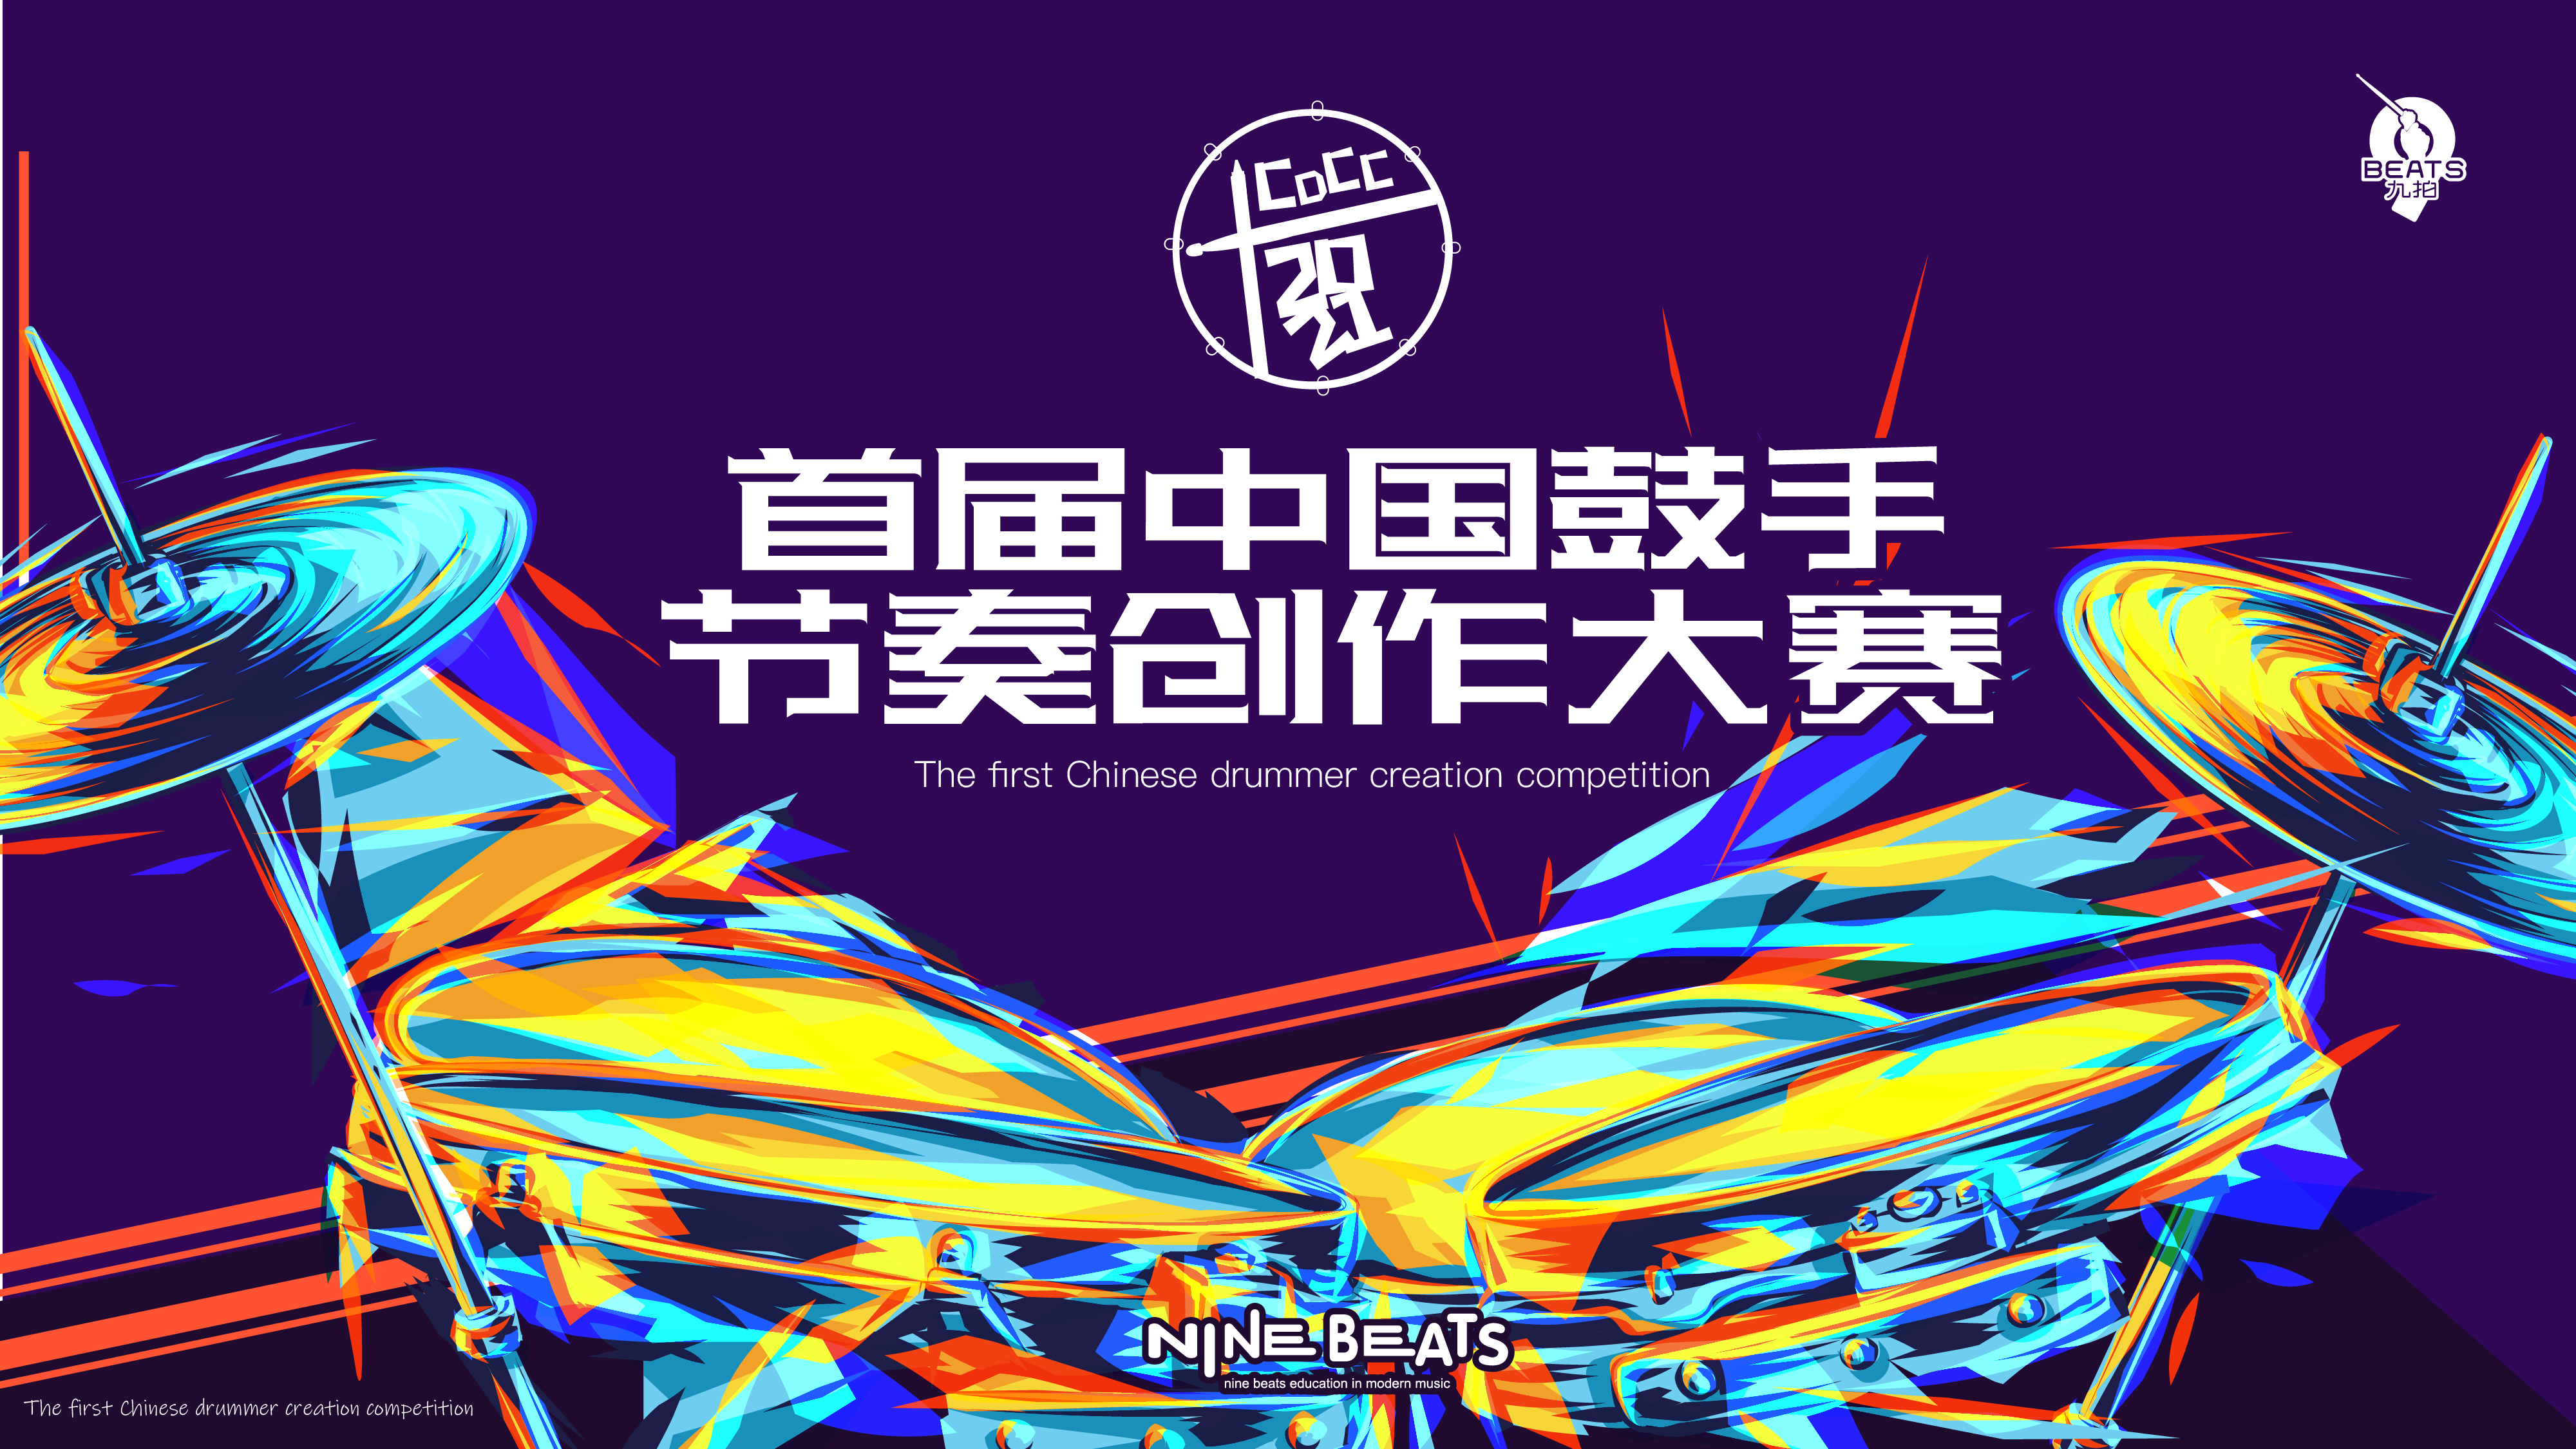 叮！您有一份邀請函待查收！2021 首屆中國鼓手節奏創作大賽來了~